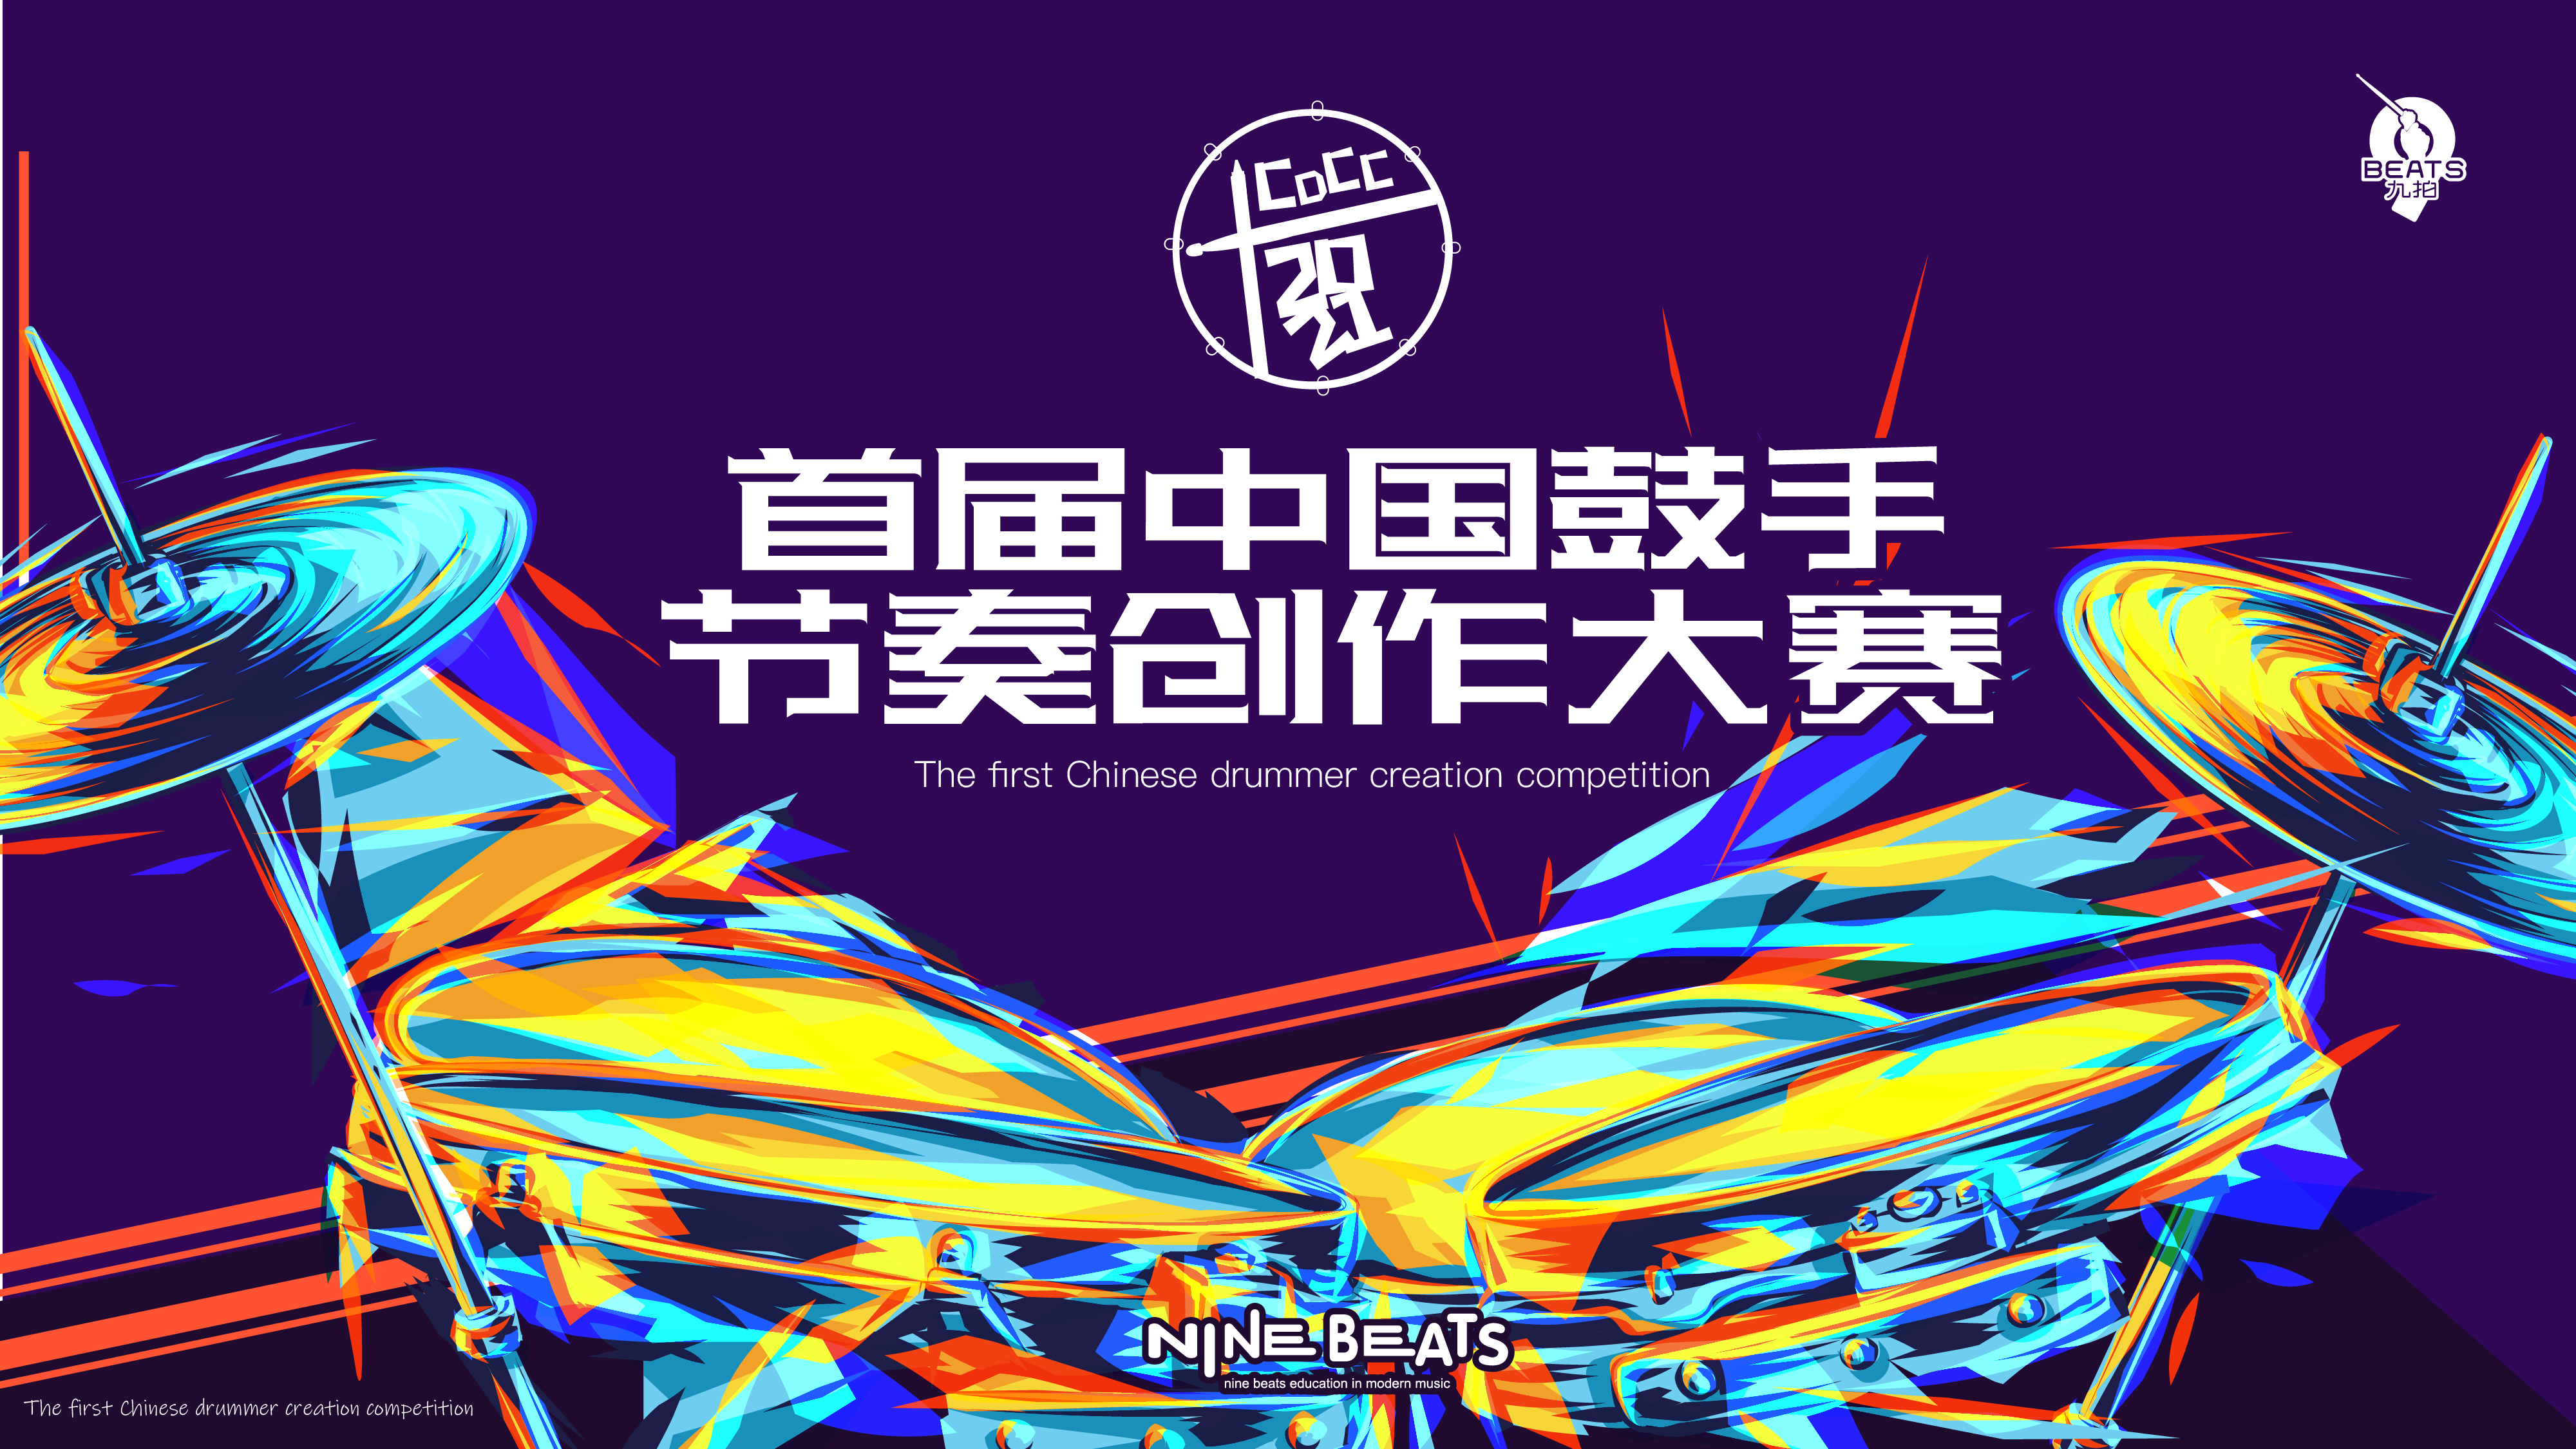 叮！您有一份邀請函待查收！2021 首屆中國鼓手節奏創作大賽來了~